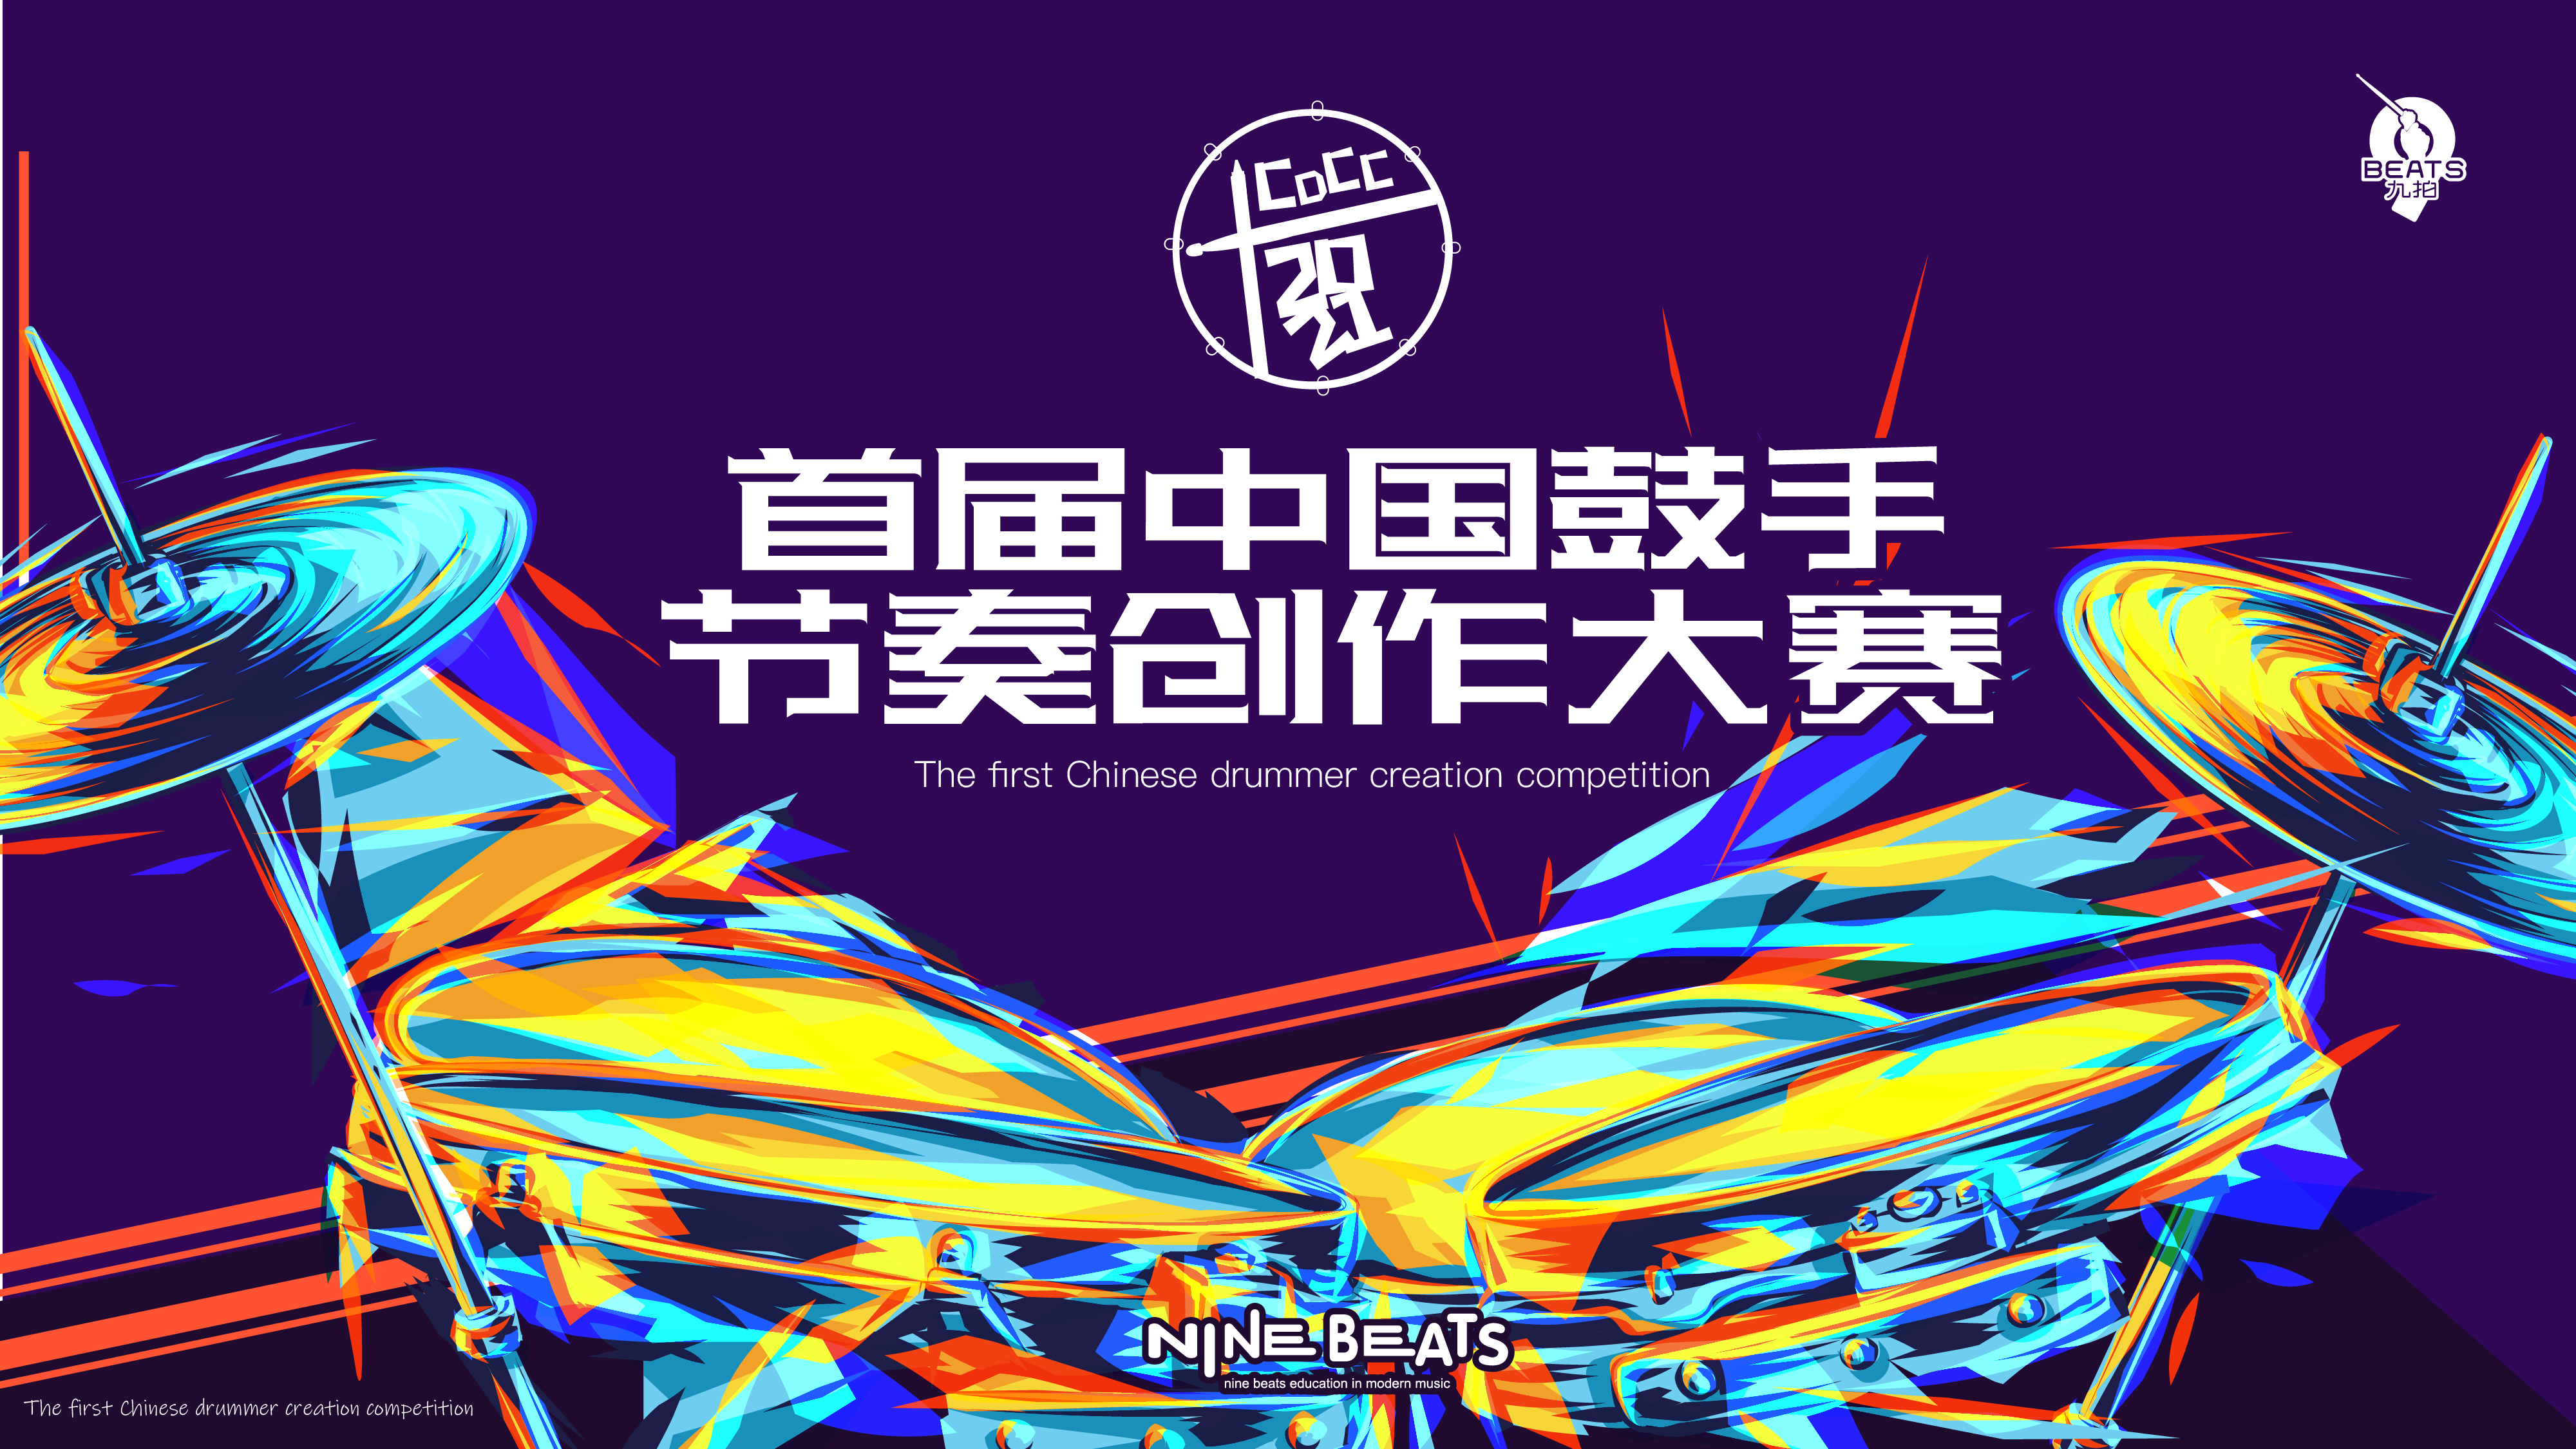 叮！您有一份邀請函待查收！2021 首屆中國鼓手節奏創作大賽來了~